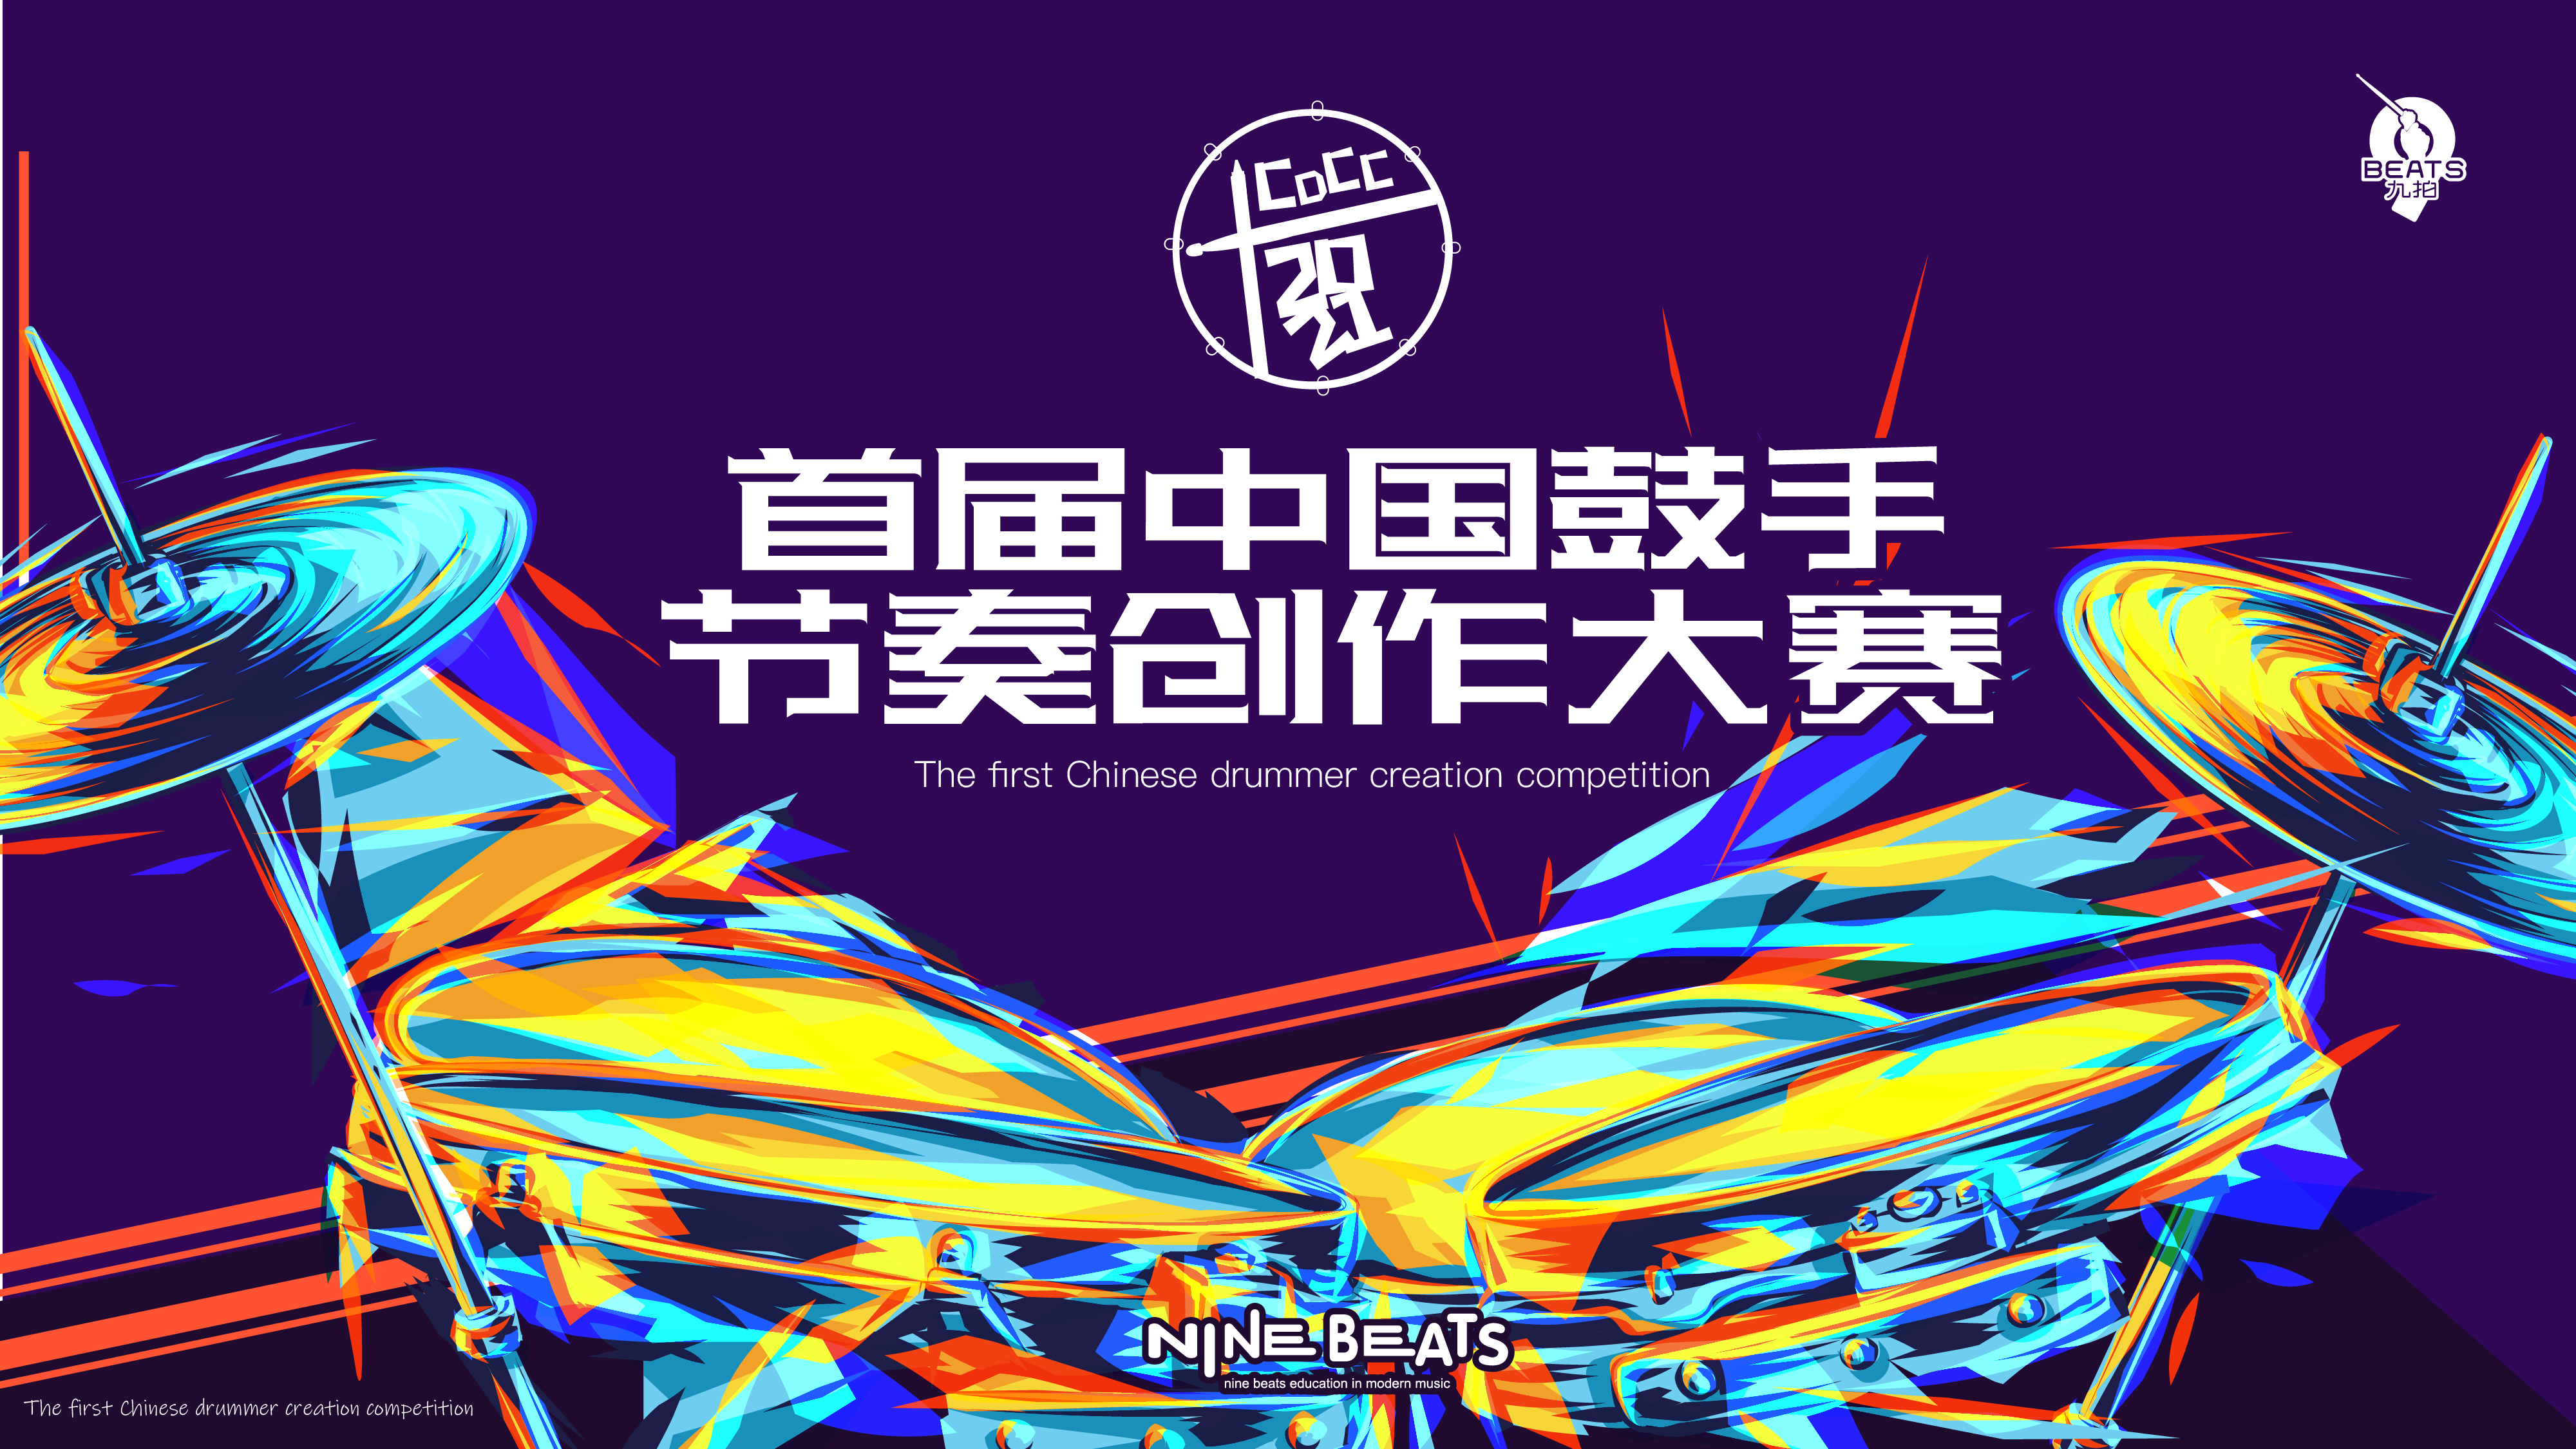 叮！您有一份邀請函待查收！2021 首屆中國鼓手節奏創作大賽來了~